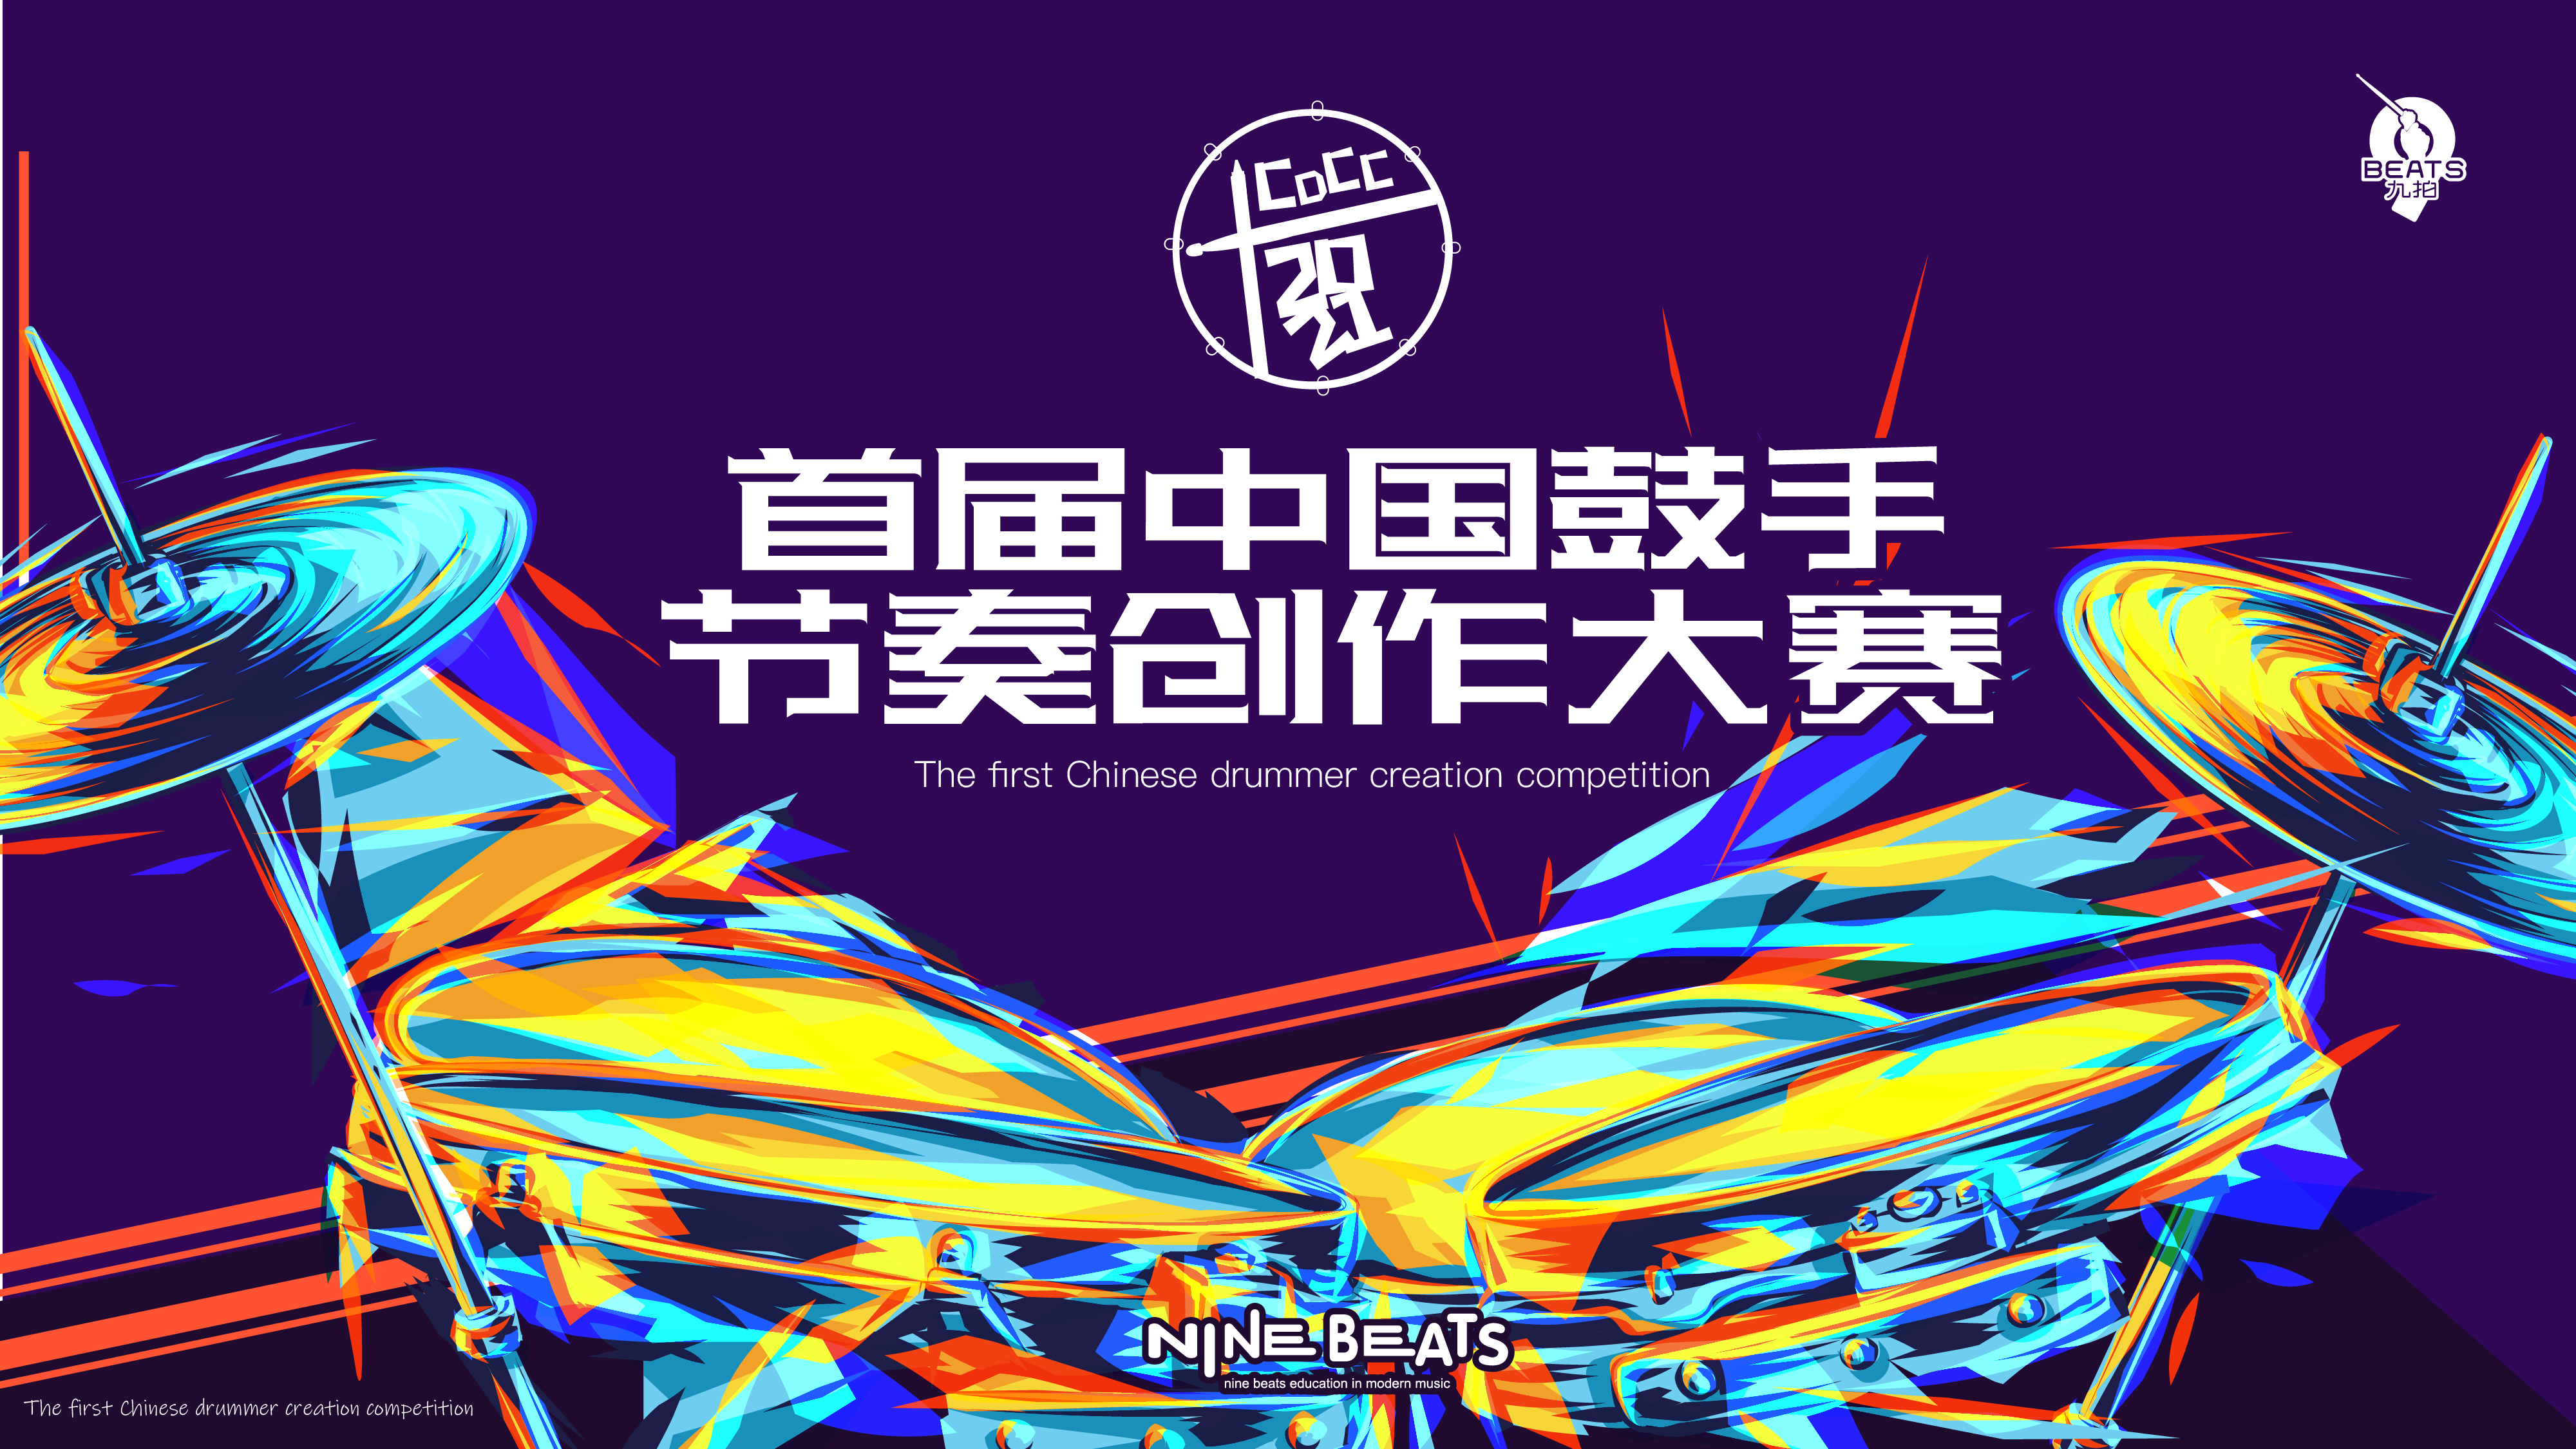 叮！您有一份邀請函待查收！2021 首屆中國鼓手節奏創作大賽來了~